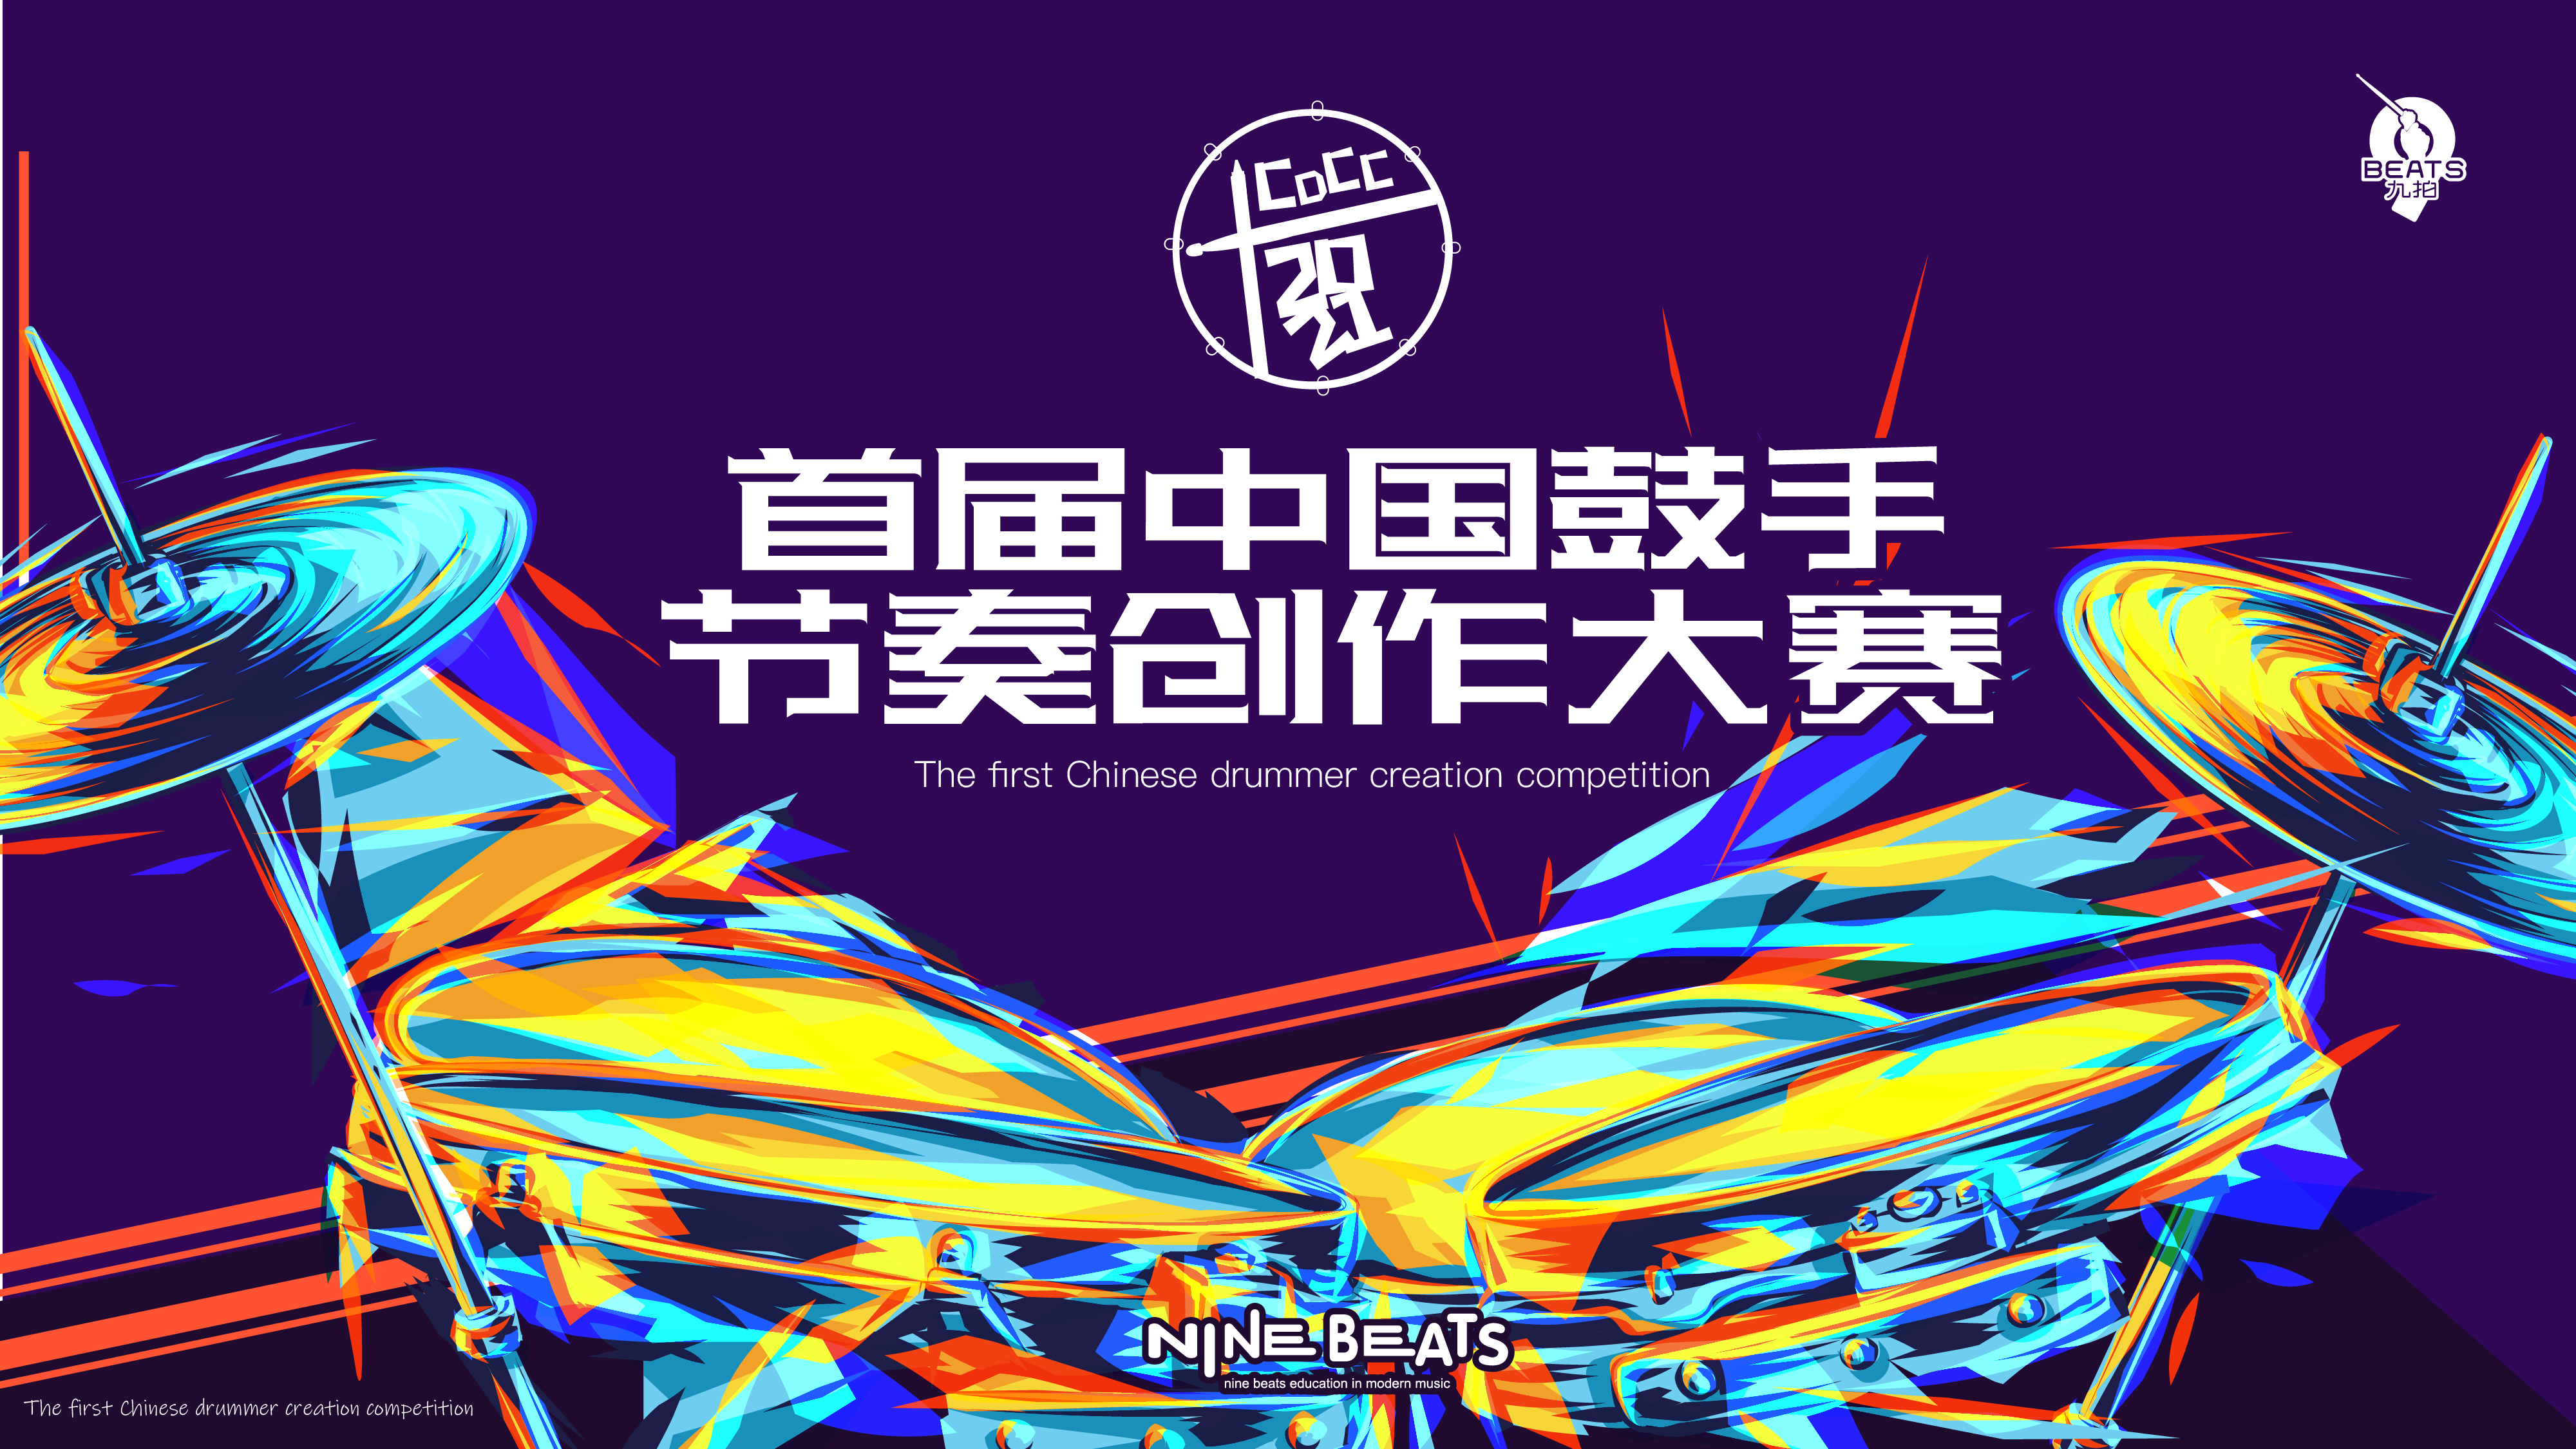 叮！您有一份邀請函待查收！2021 首屆中國鼓手節奏創作大賽來了~